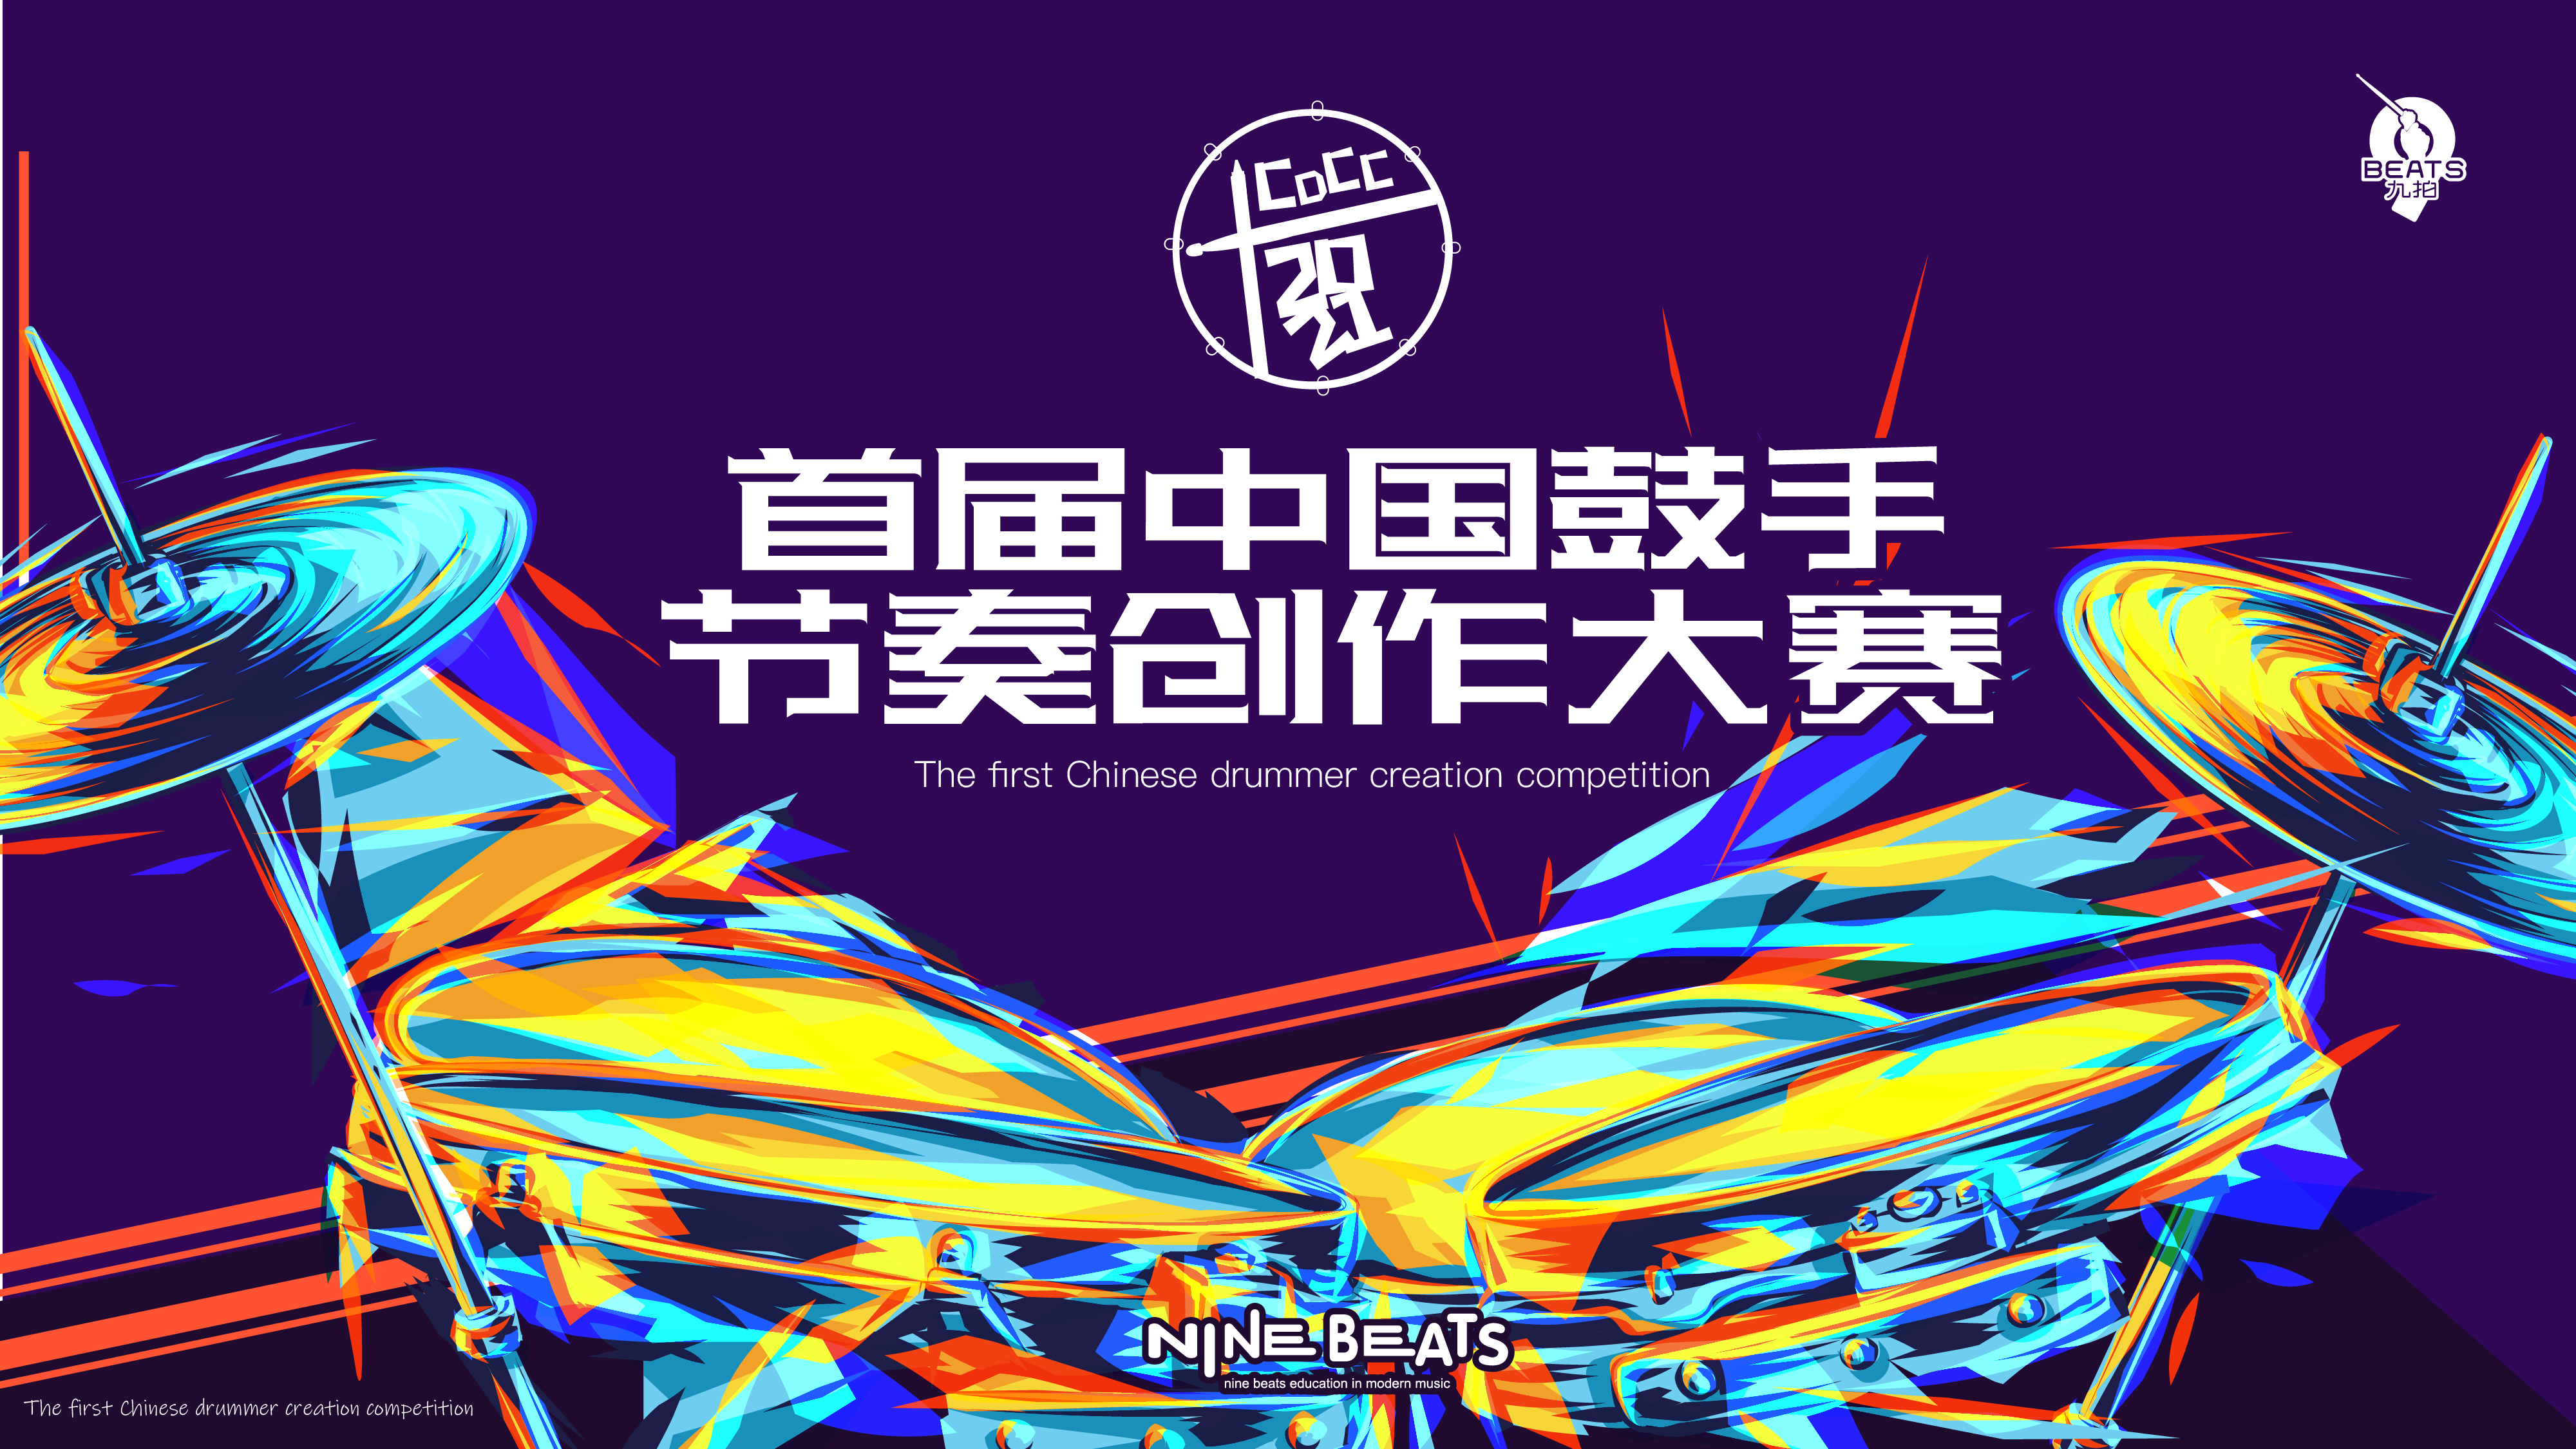 叮！您有一份邀請函待查收！2021 首屆中國鼓手節奏創作大賽來了~